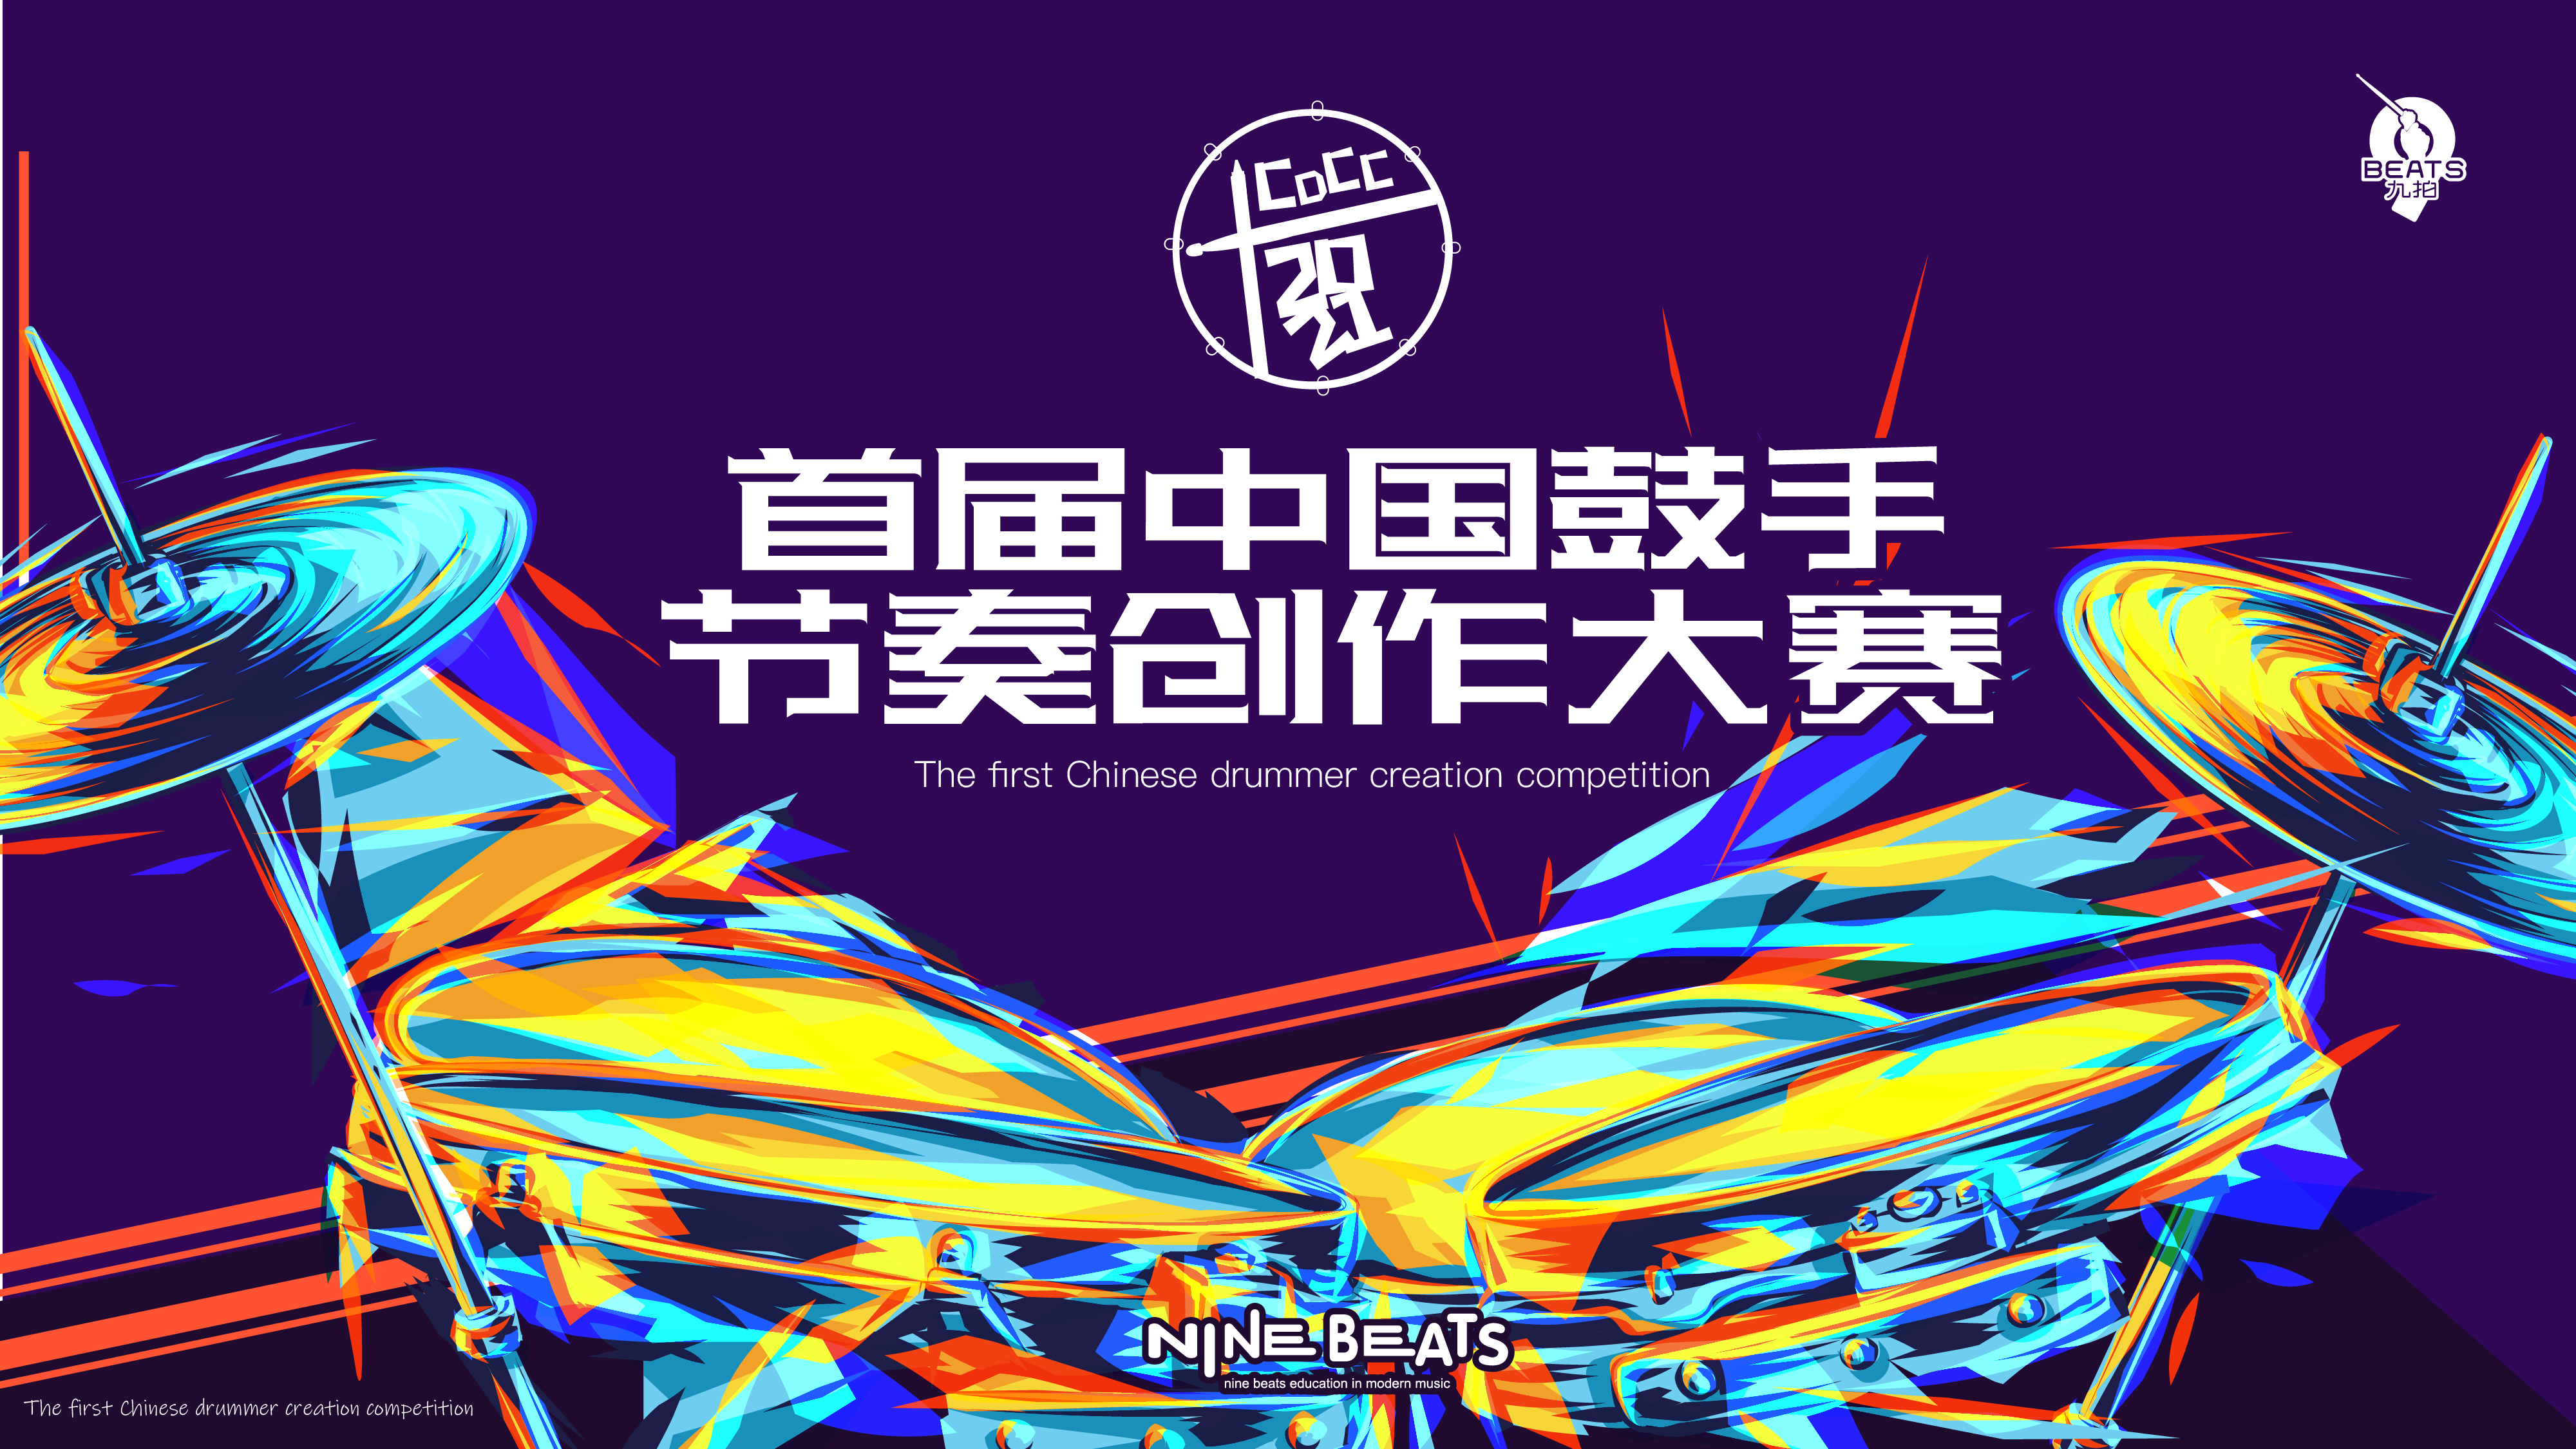 叮！您有一份邀請函待查收！2021 首屆中國鼓手節奏創作大賽來了~